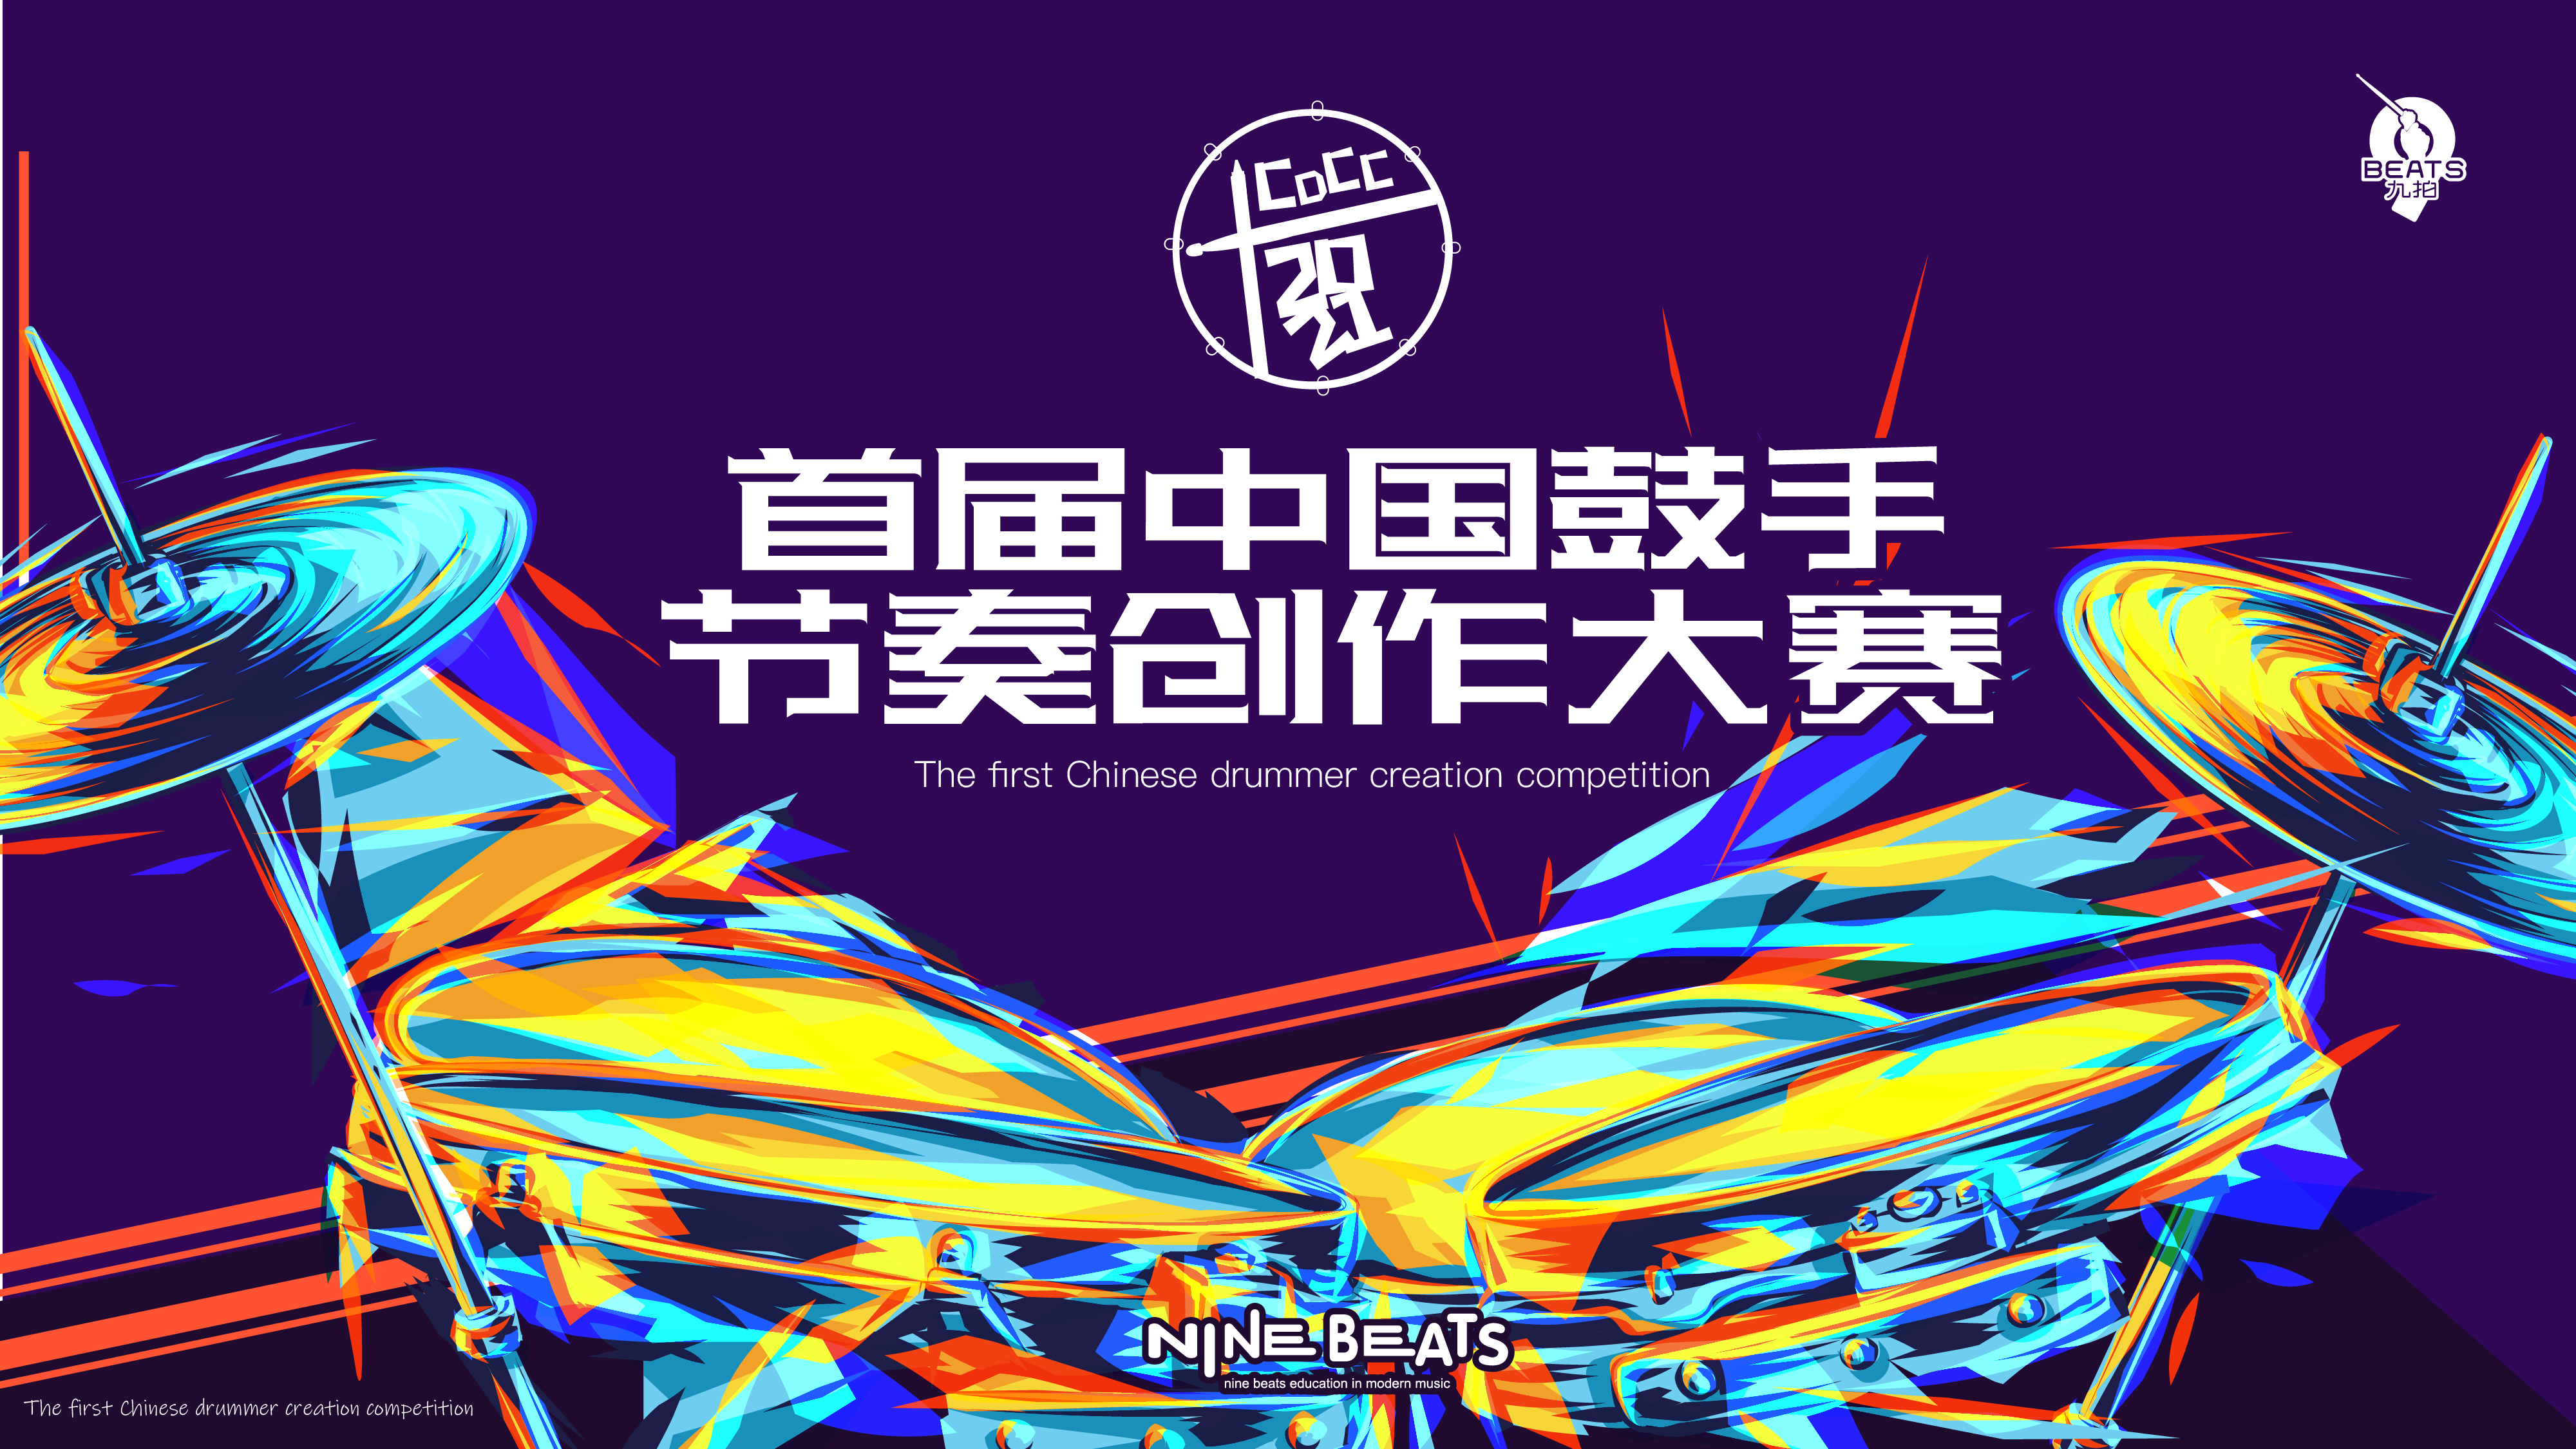 叮！您有一份邀請函待查收！2021 首屆中國鼓手節奏創作大賽來了~